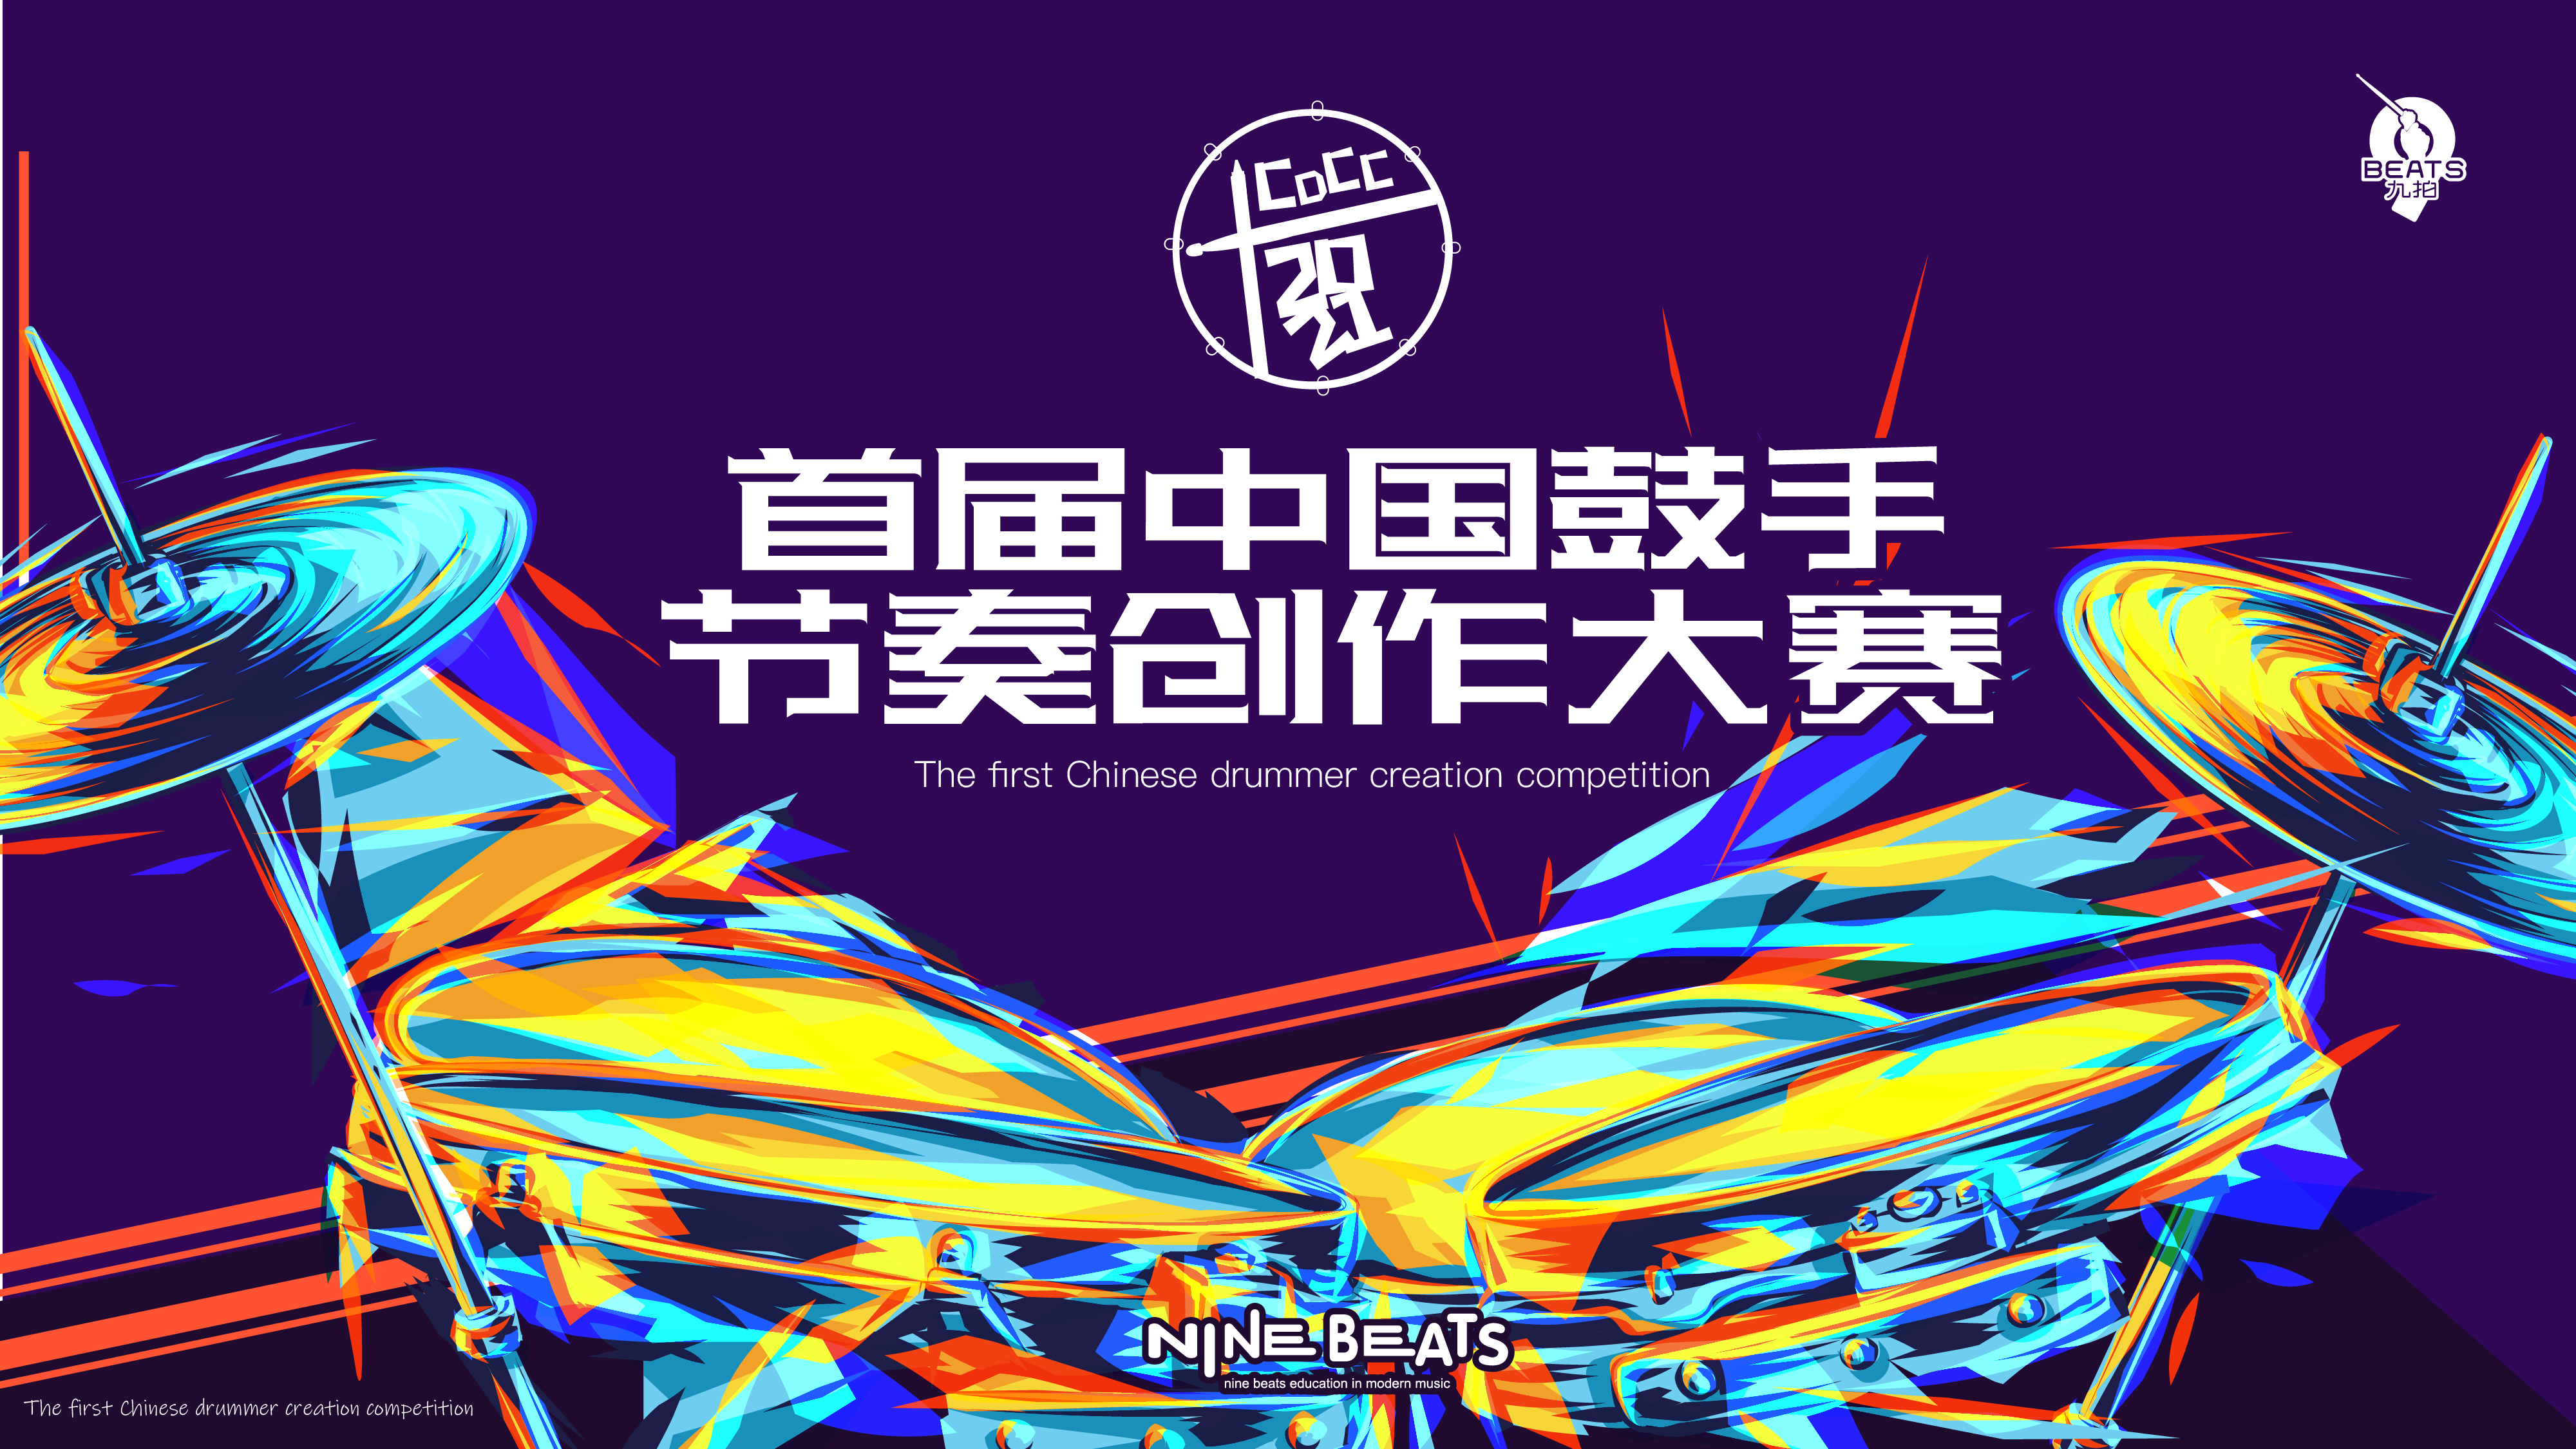 叮！您有一份邀請函待查收！2021 首屆中國鼓手節奏創作大賽來了~